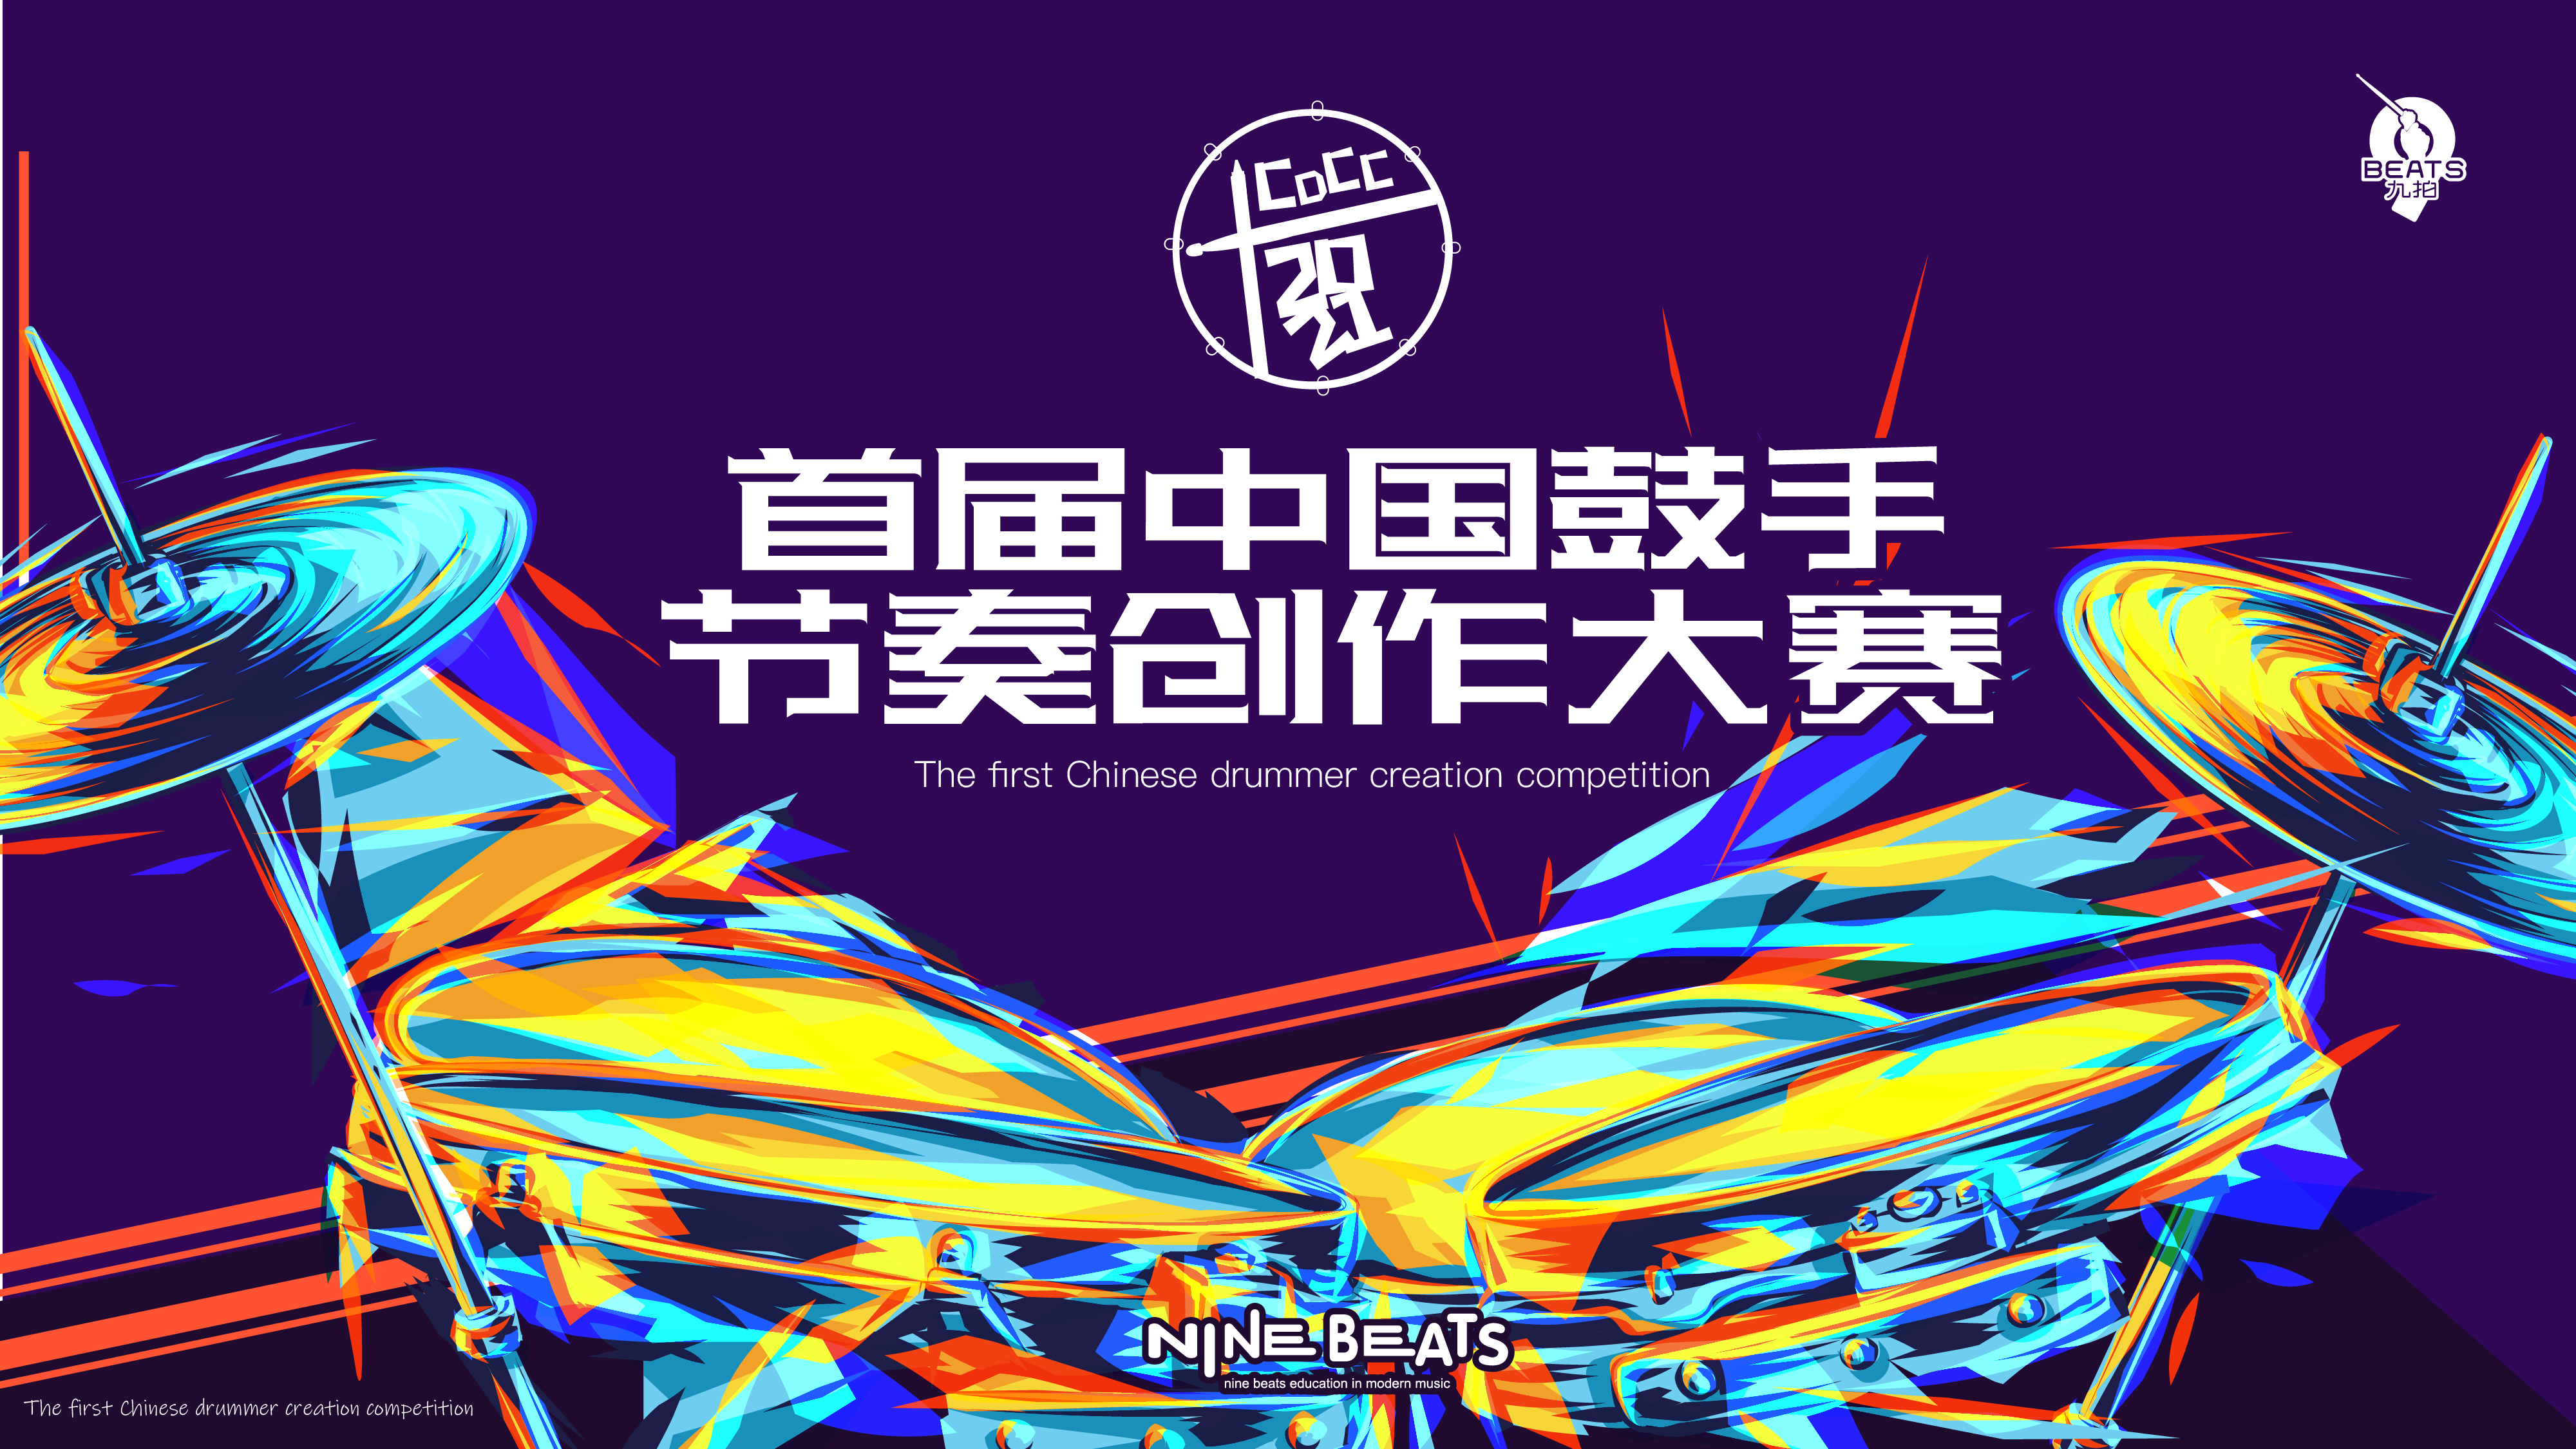 叮！您有一份邀請函待查收！2021 首屆中國鼓手節奏創作大賽來了~